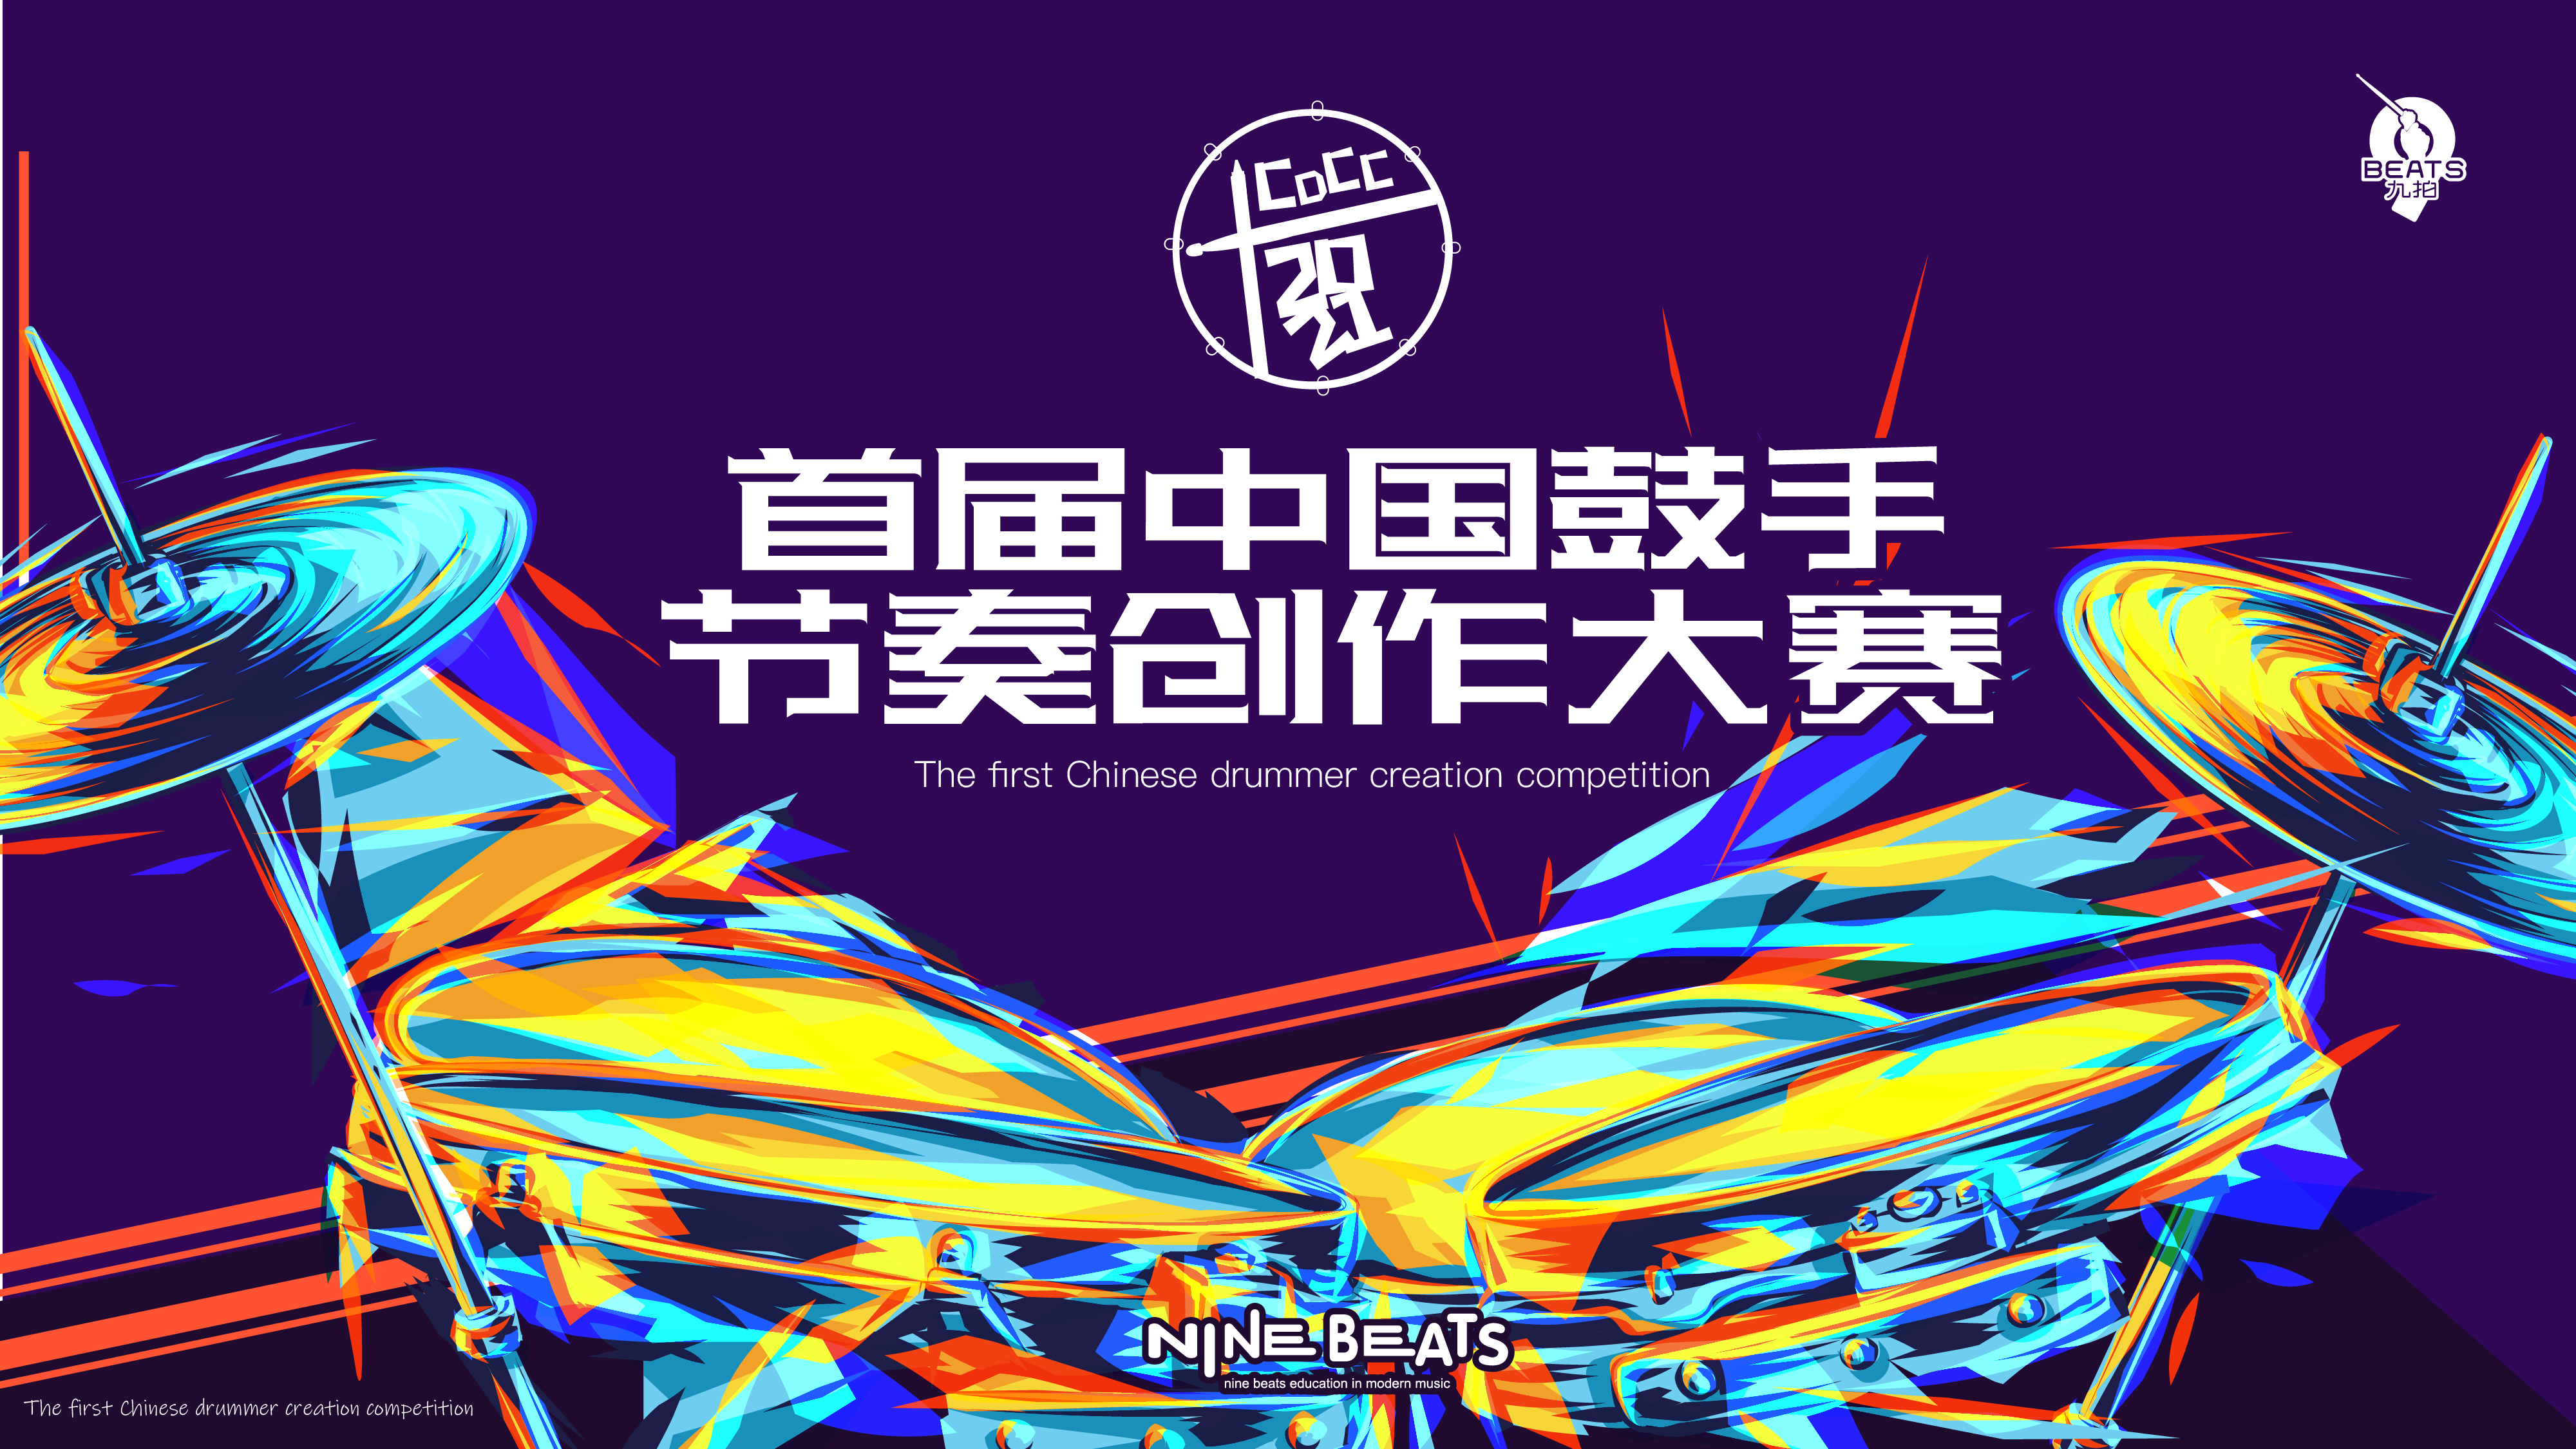 叮！您有一份邀請函待查收！2021 首屆中國鼓手節奏創作大賽來了~